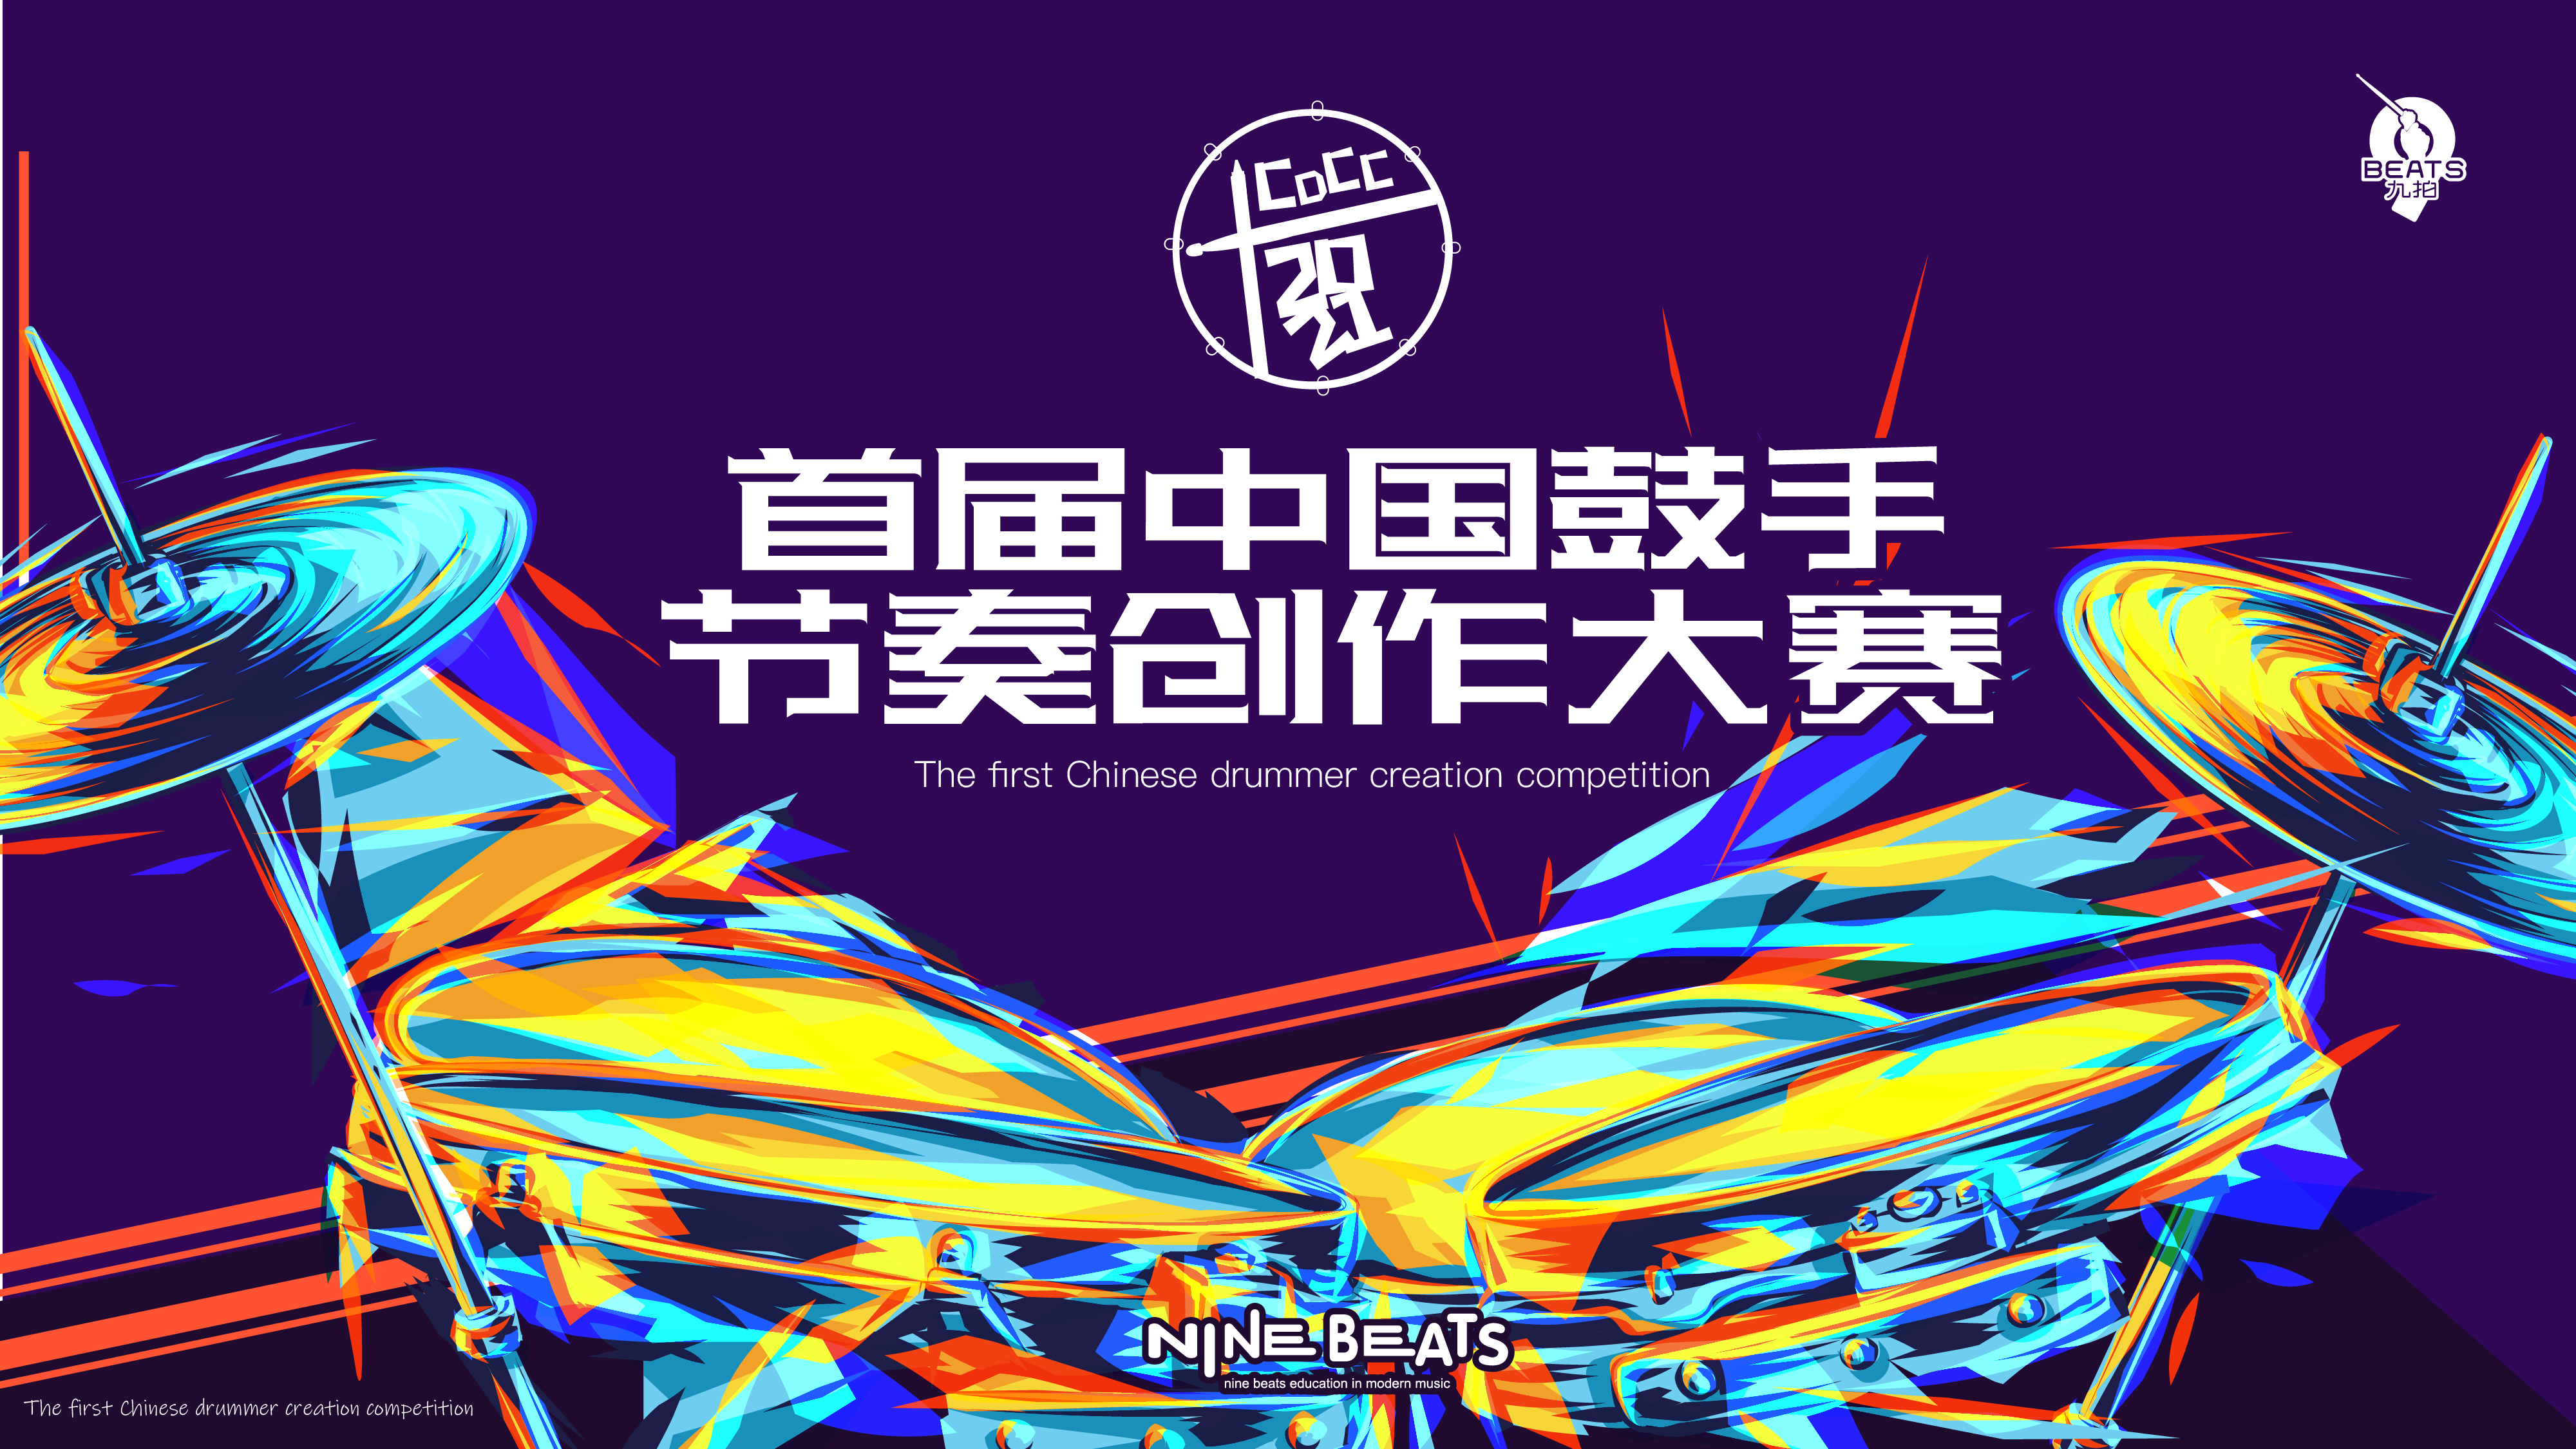 叮！您有一份邀請函待查收！2021 首屆中國鼓手節奏創作大賽來了~